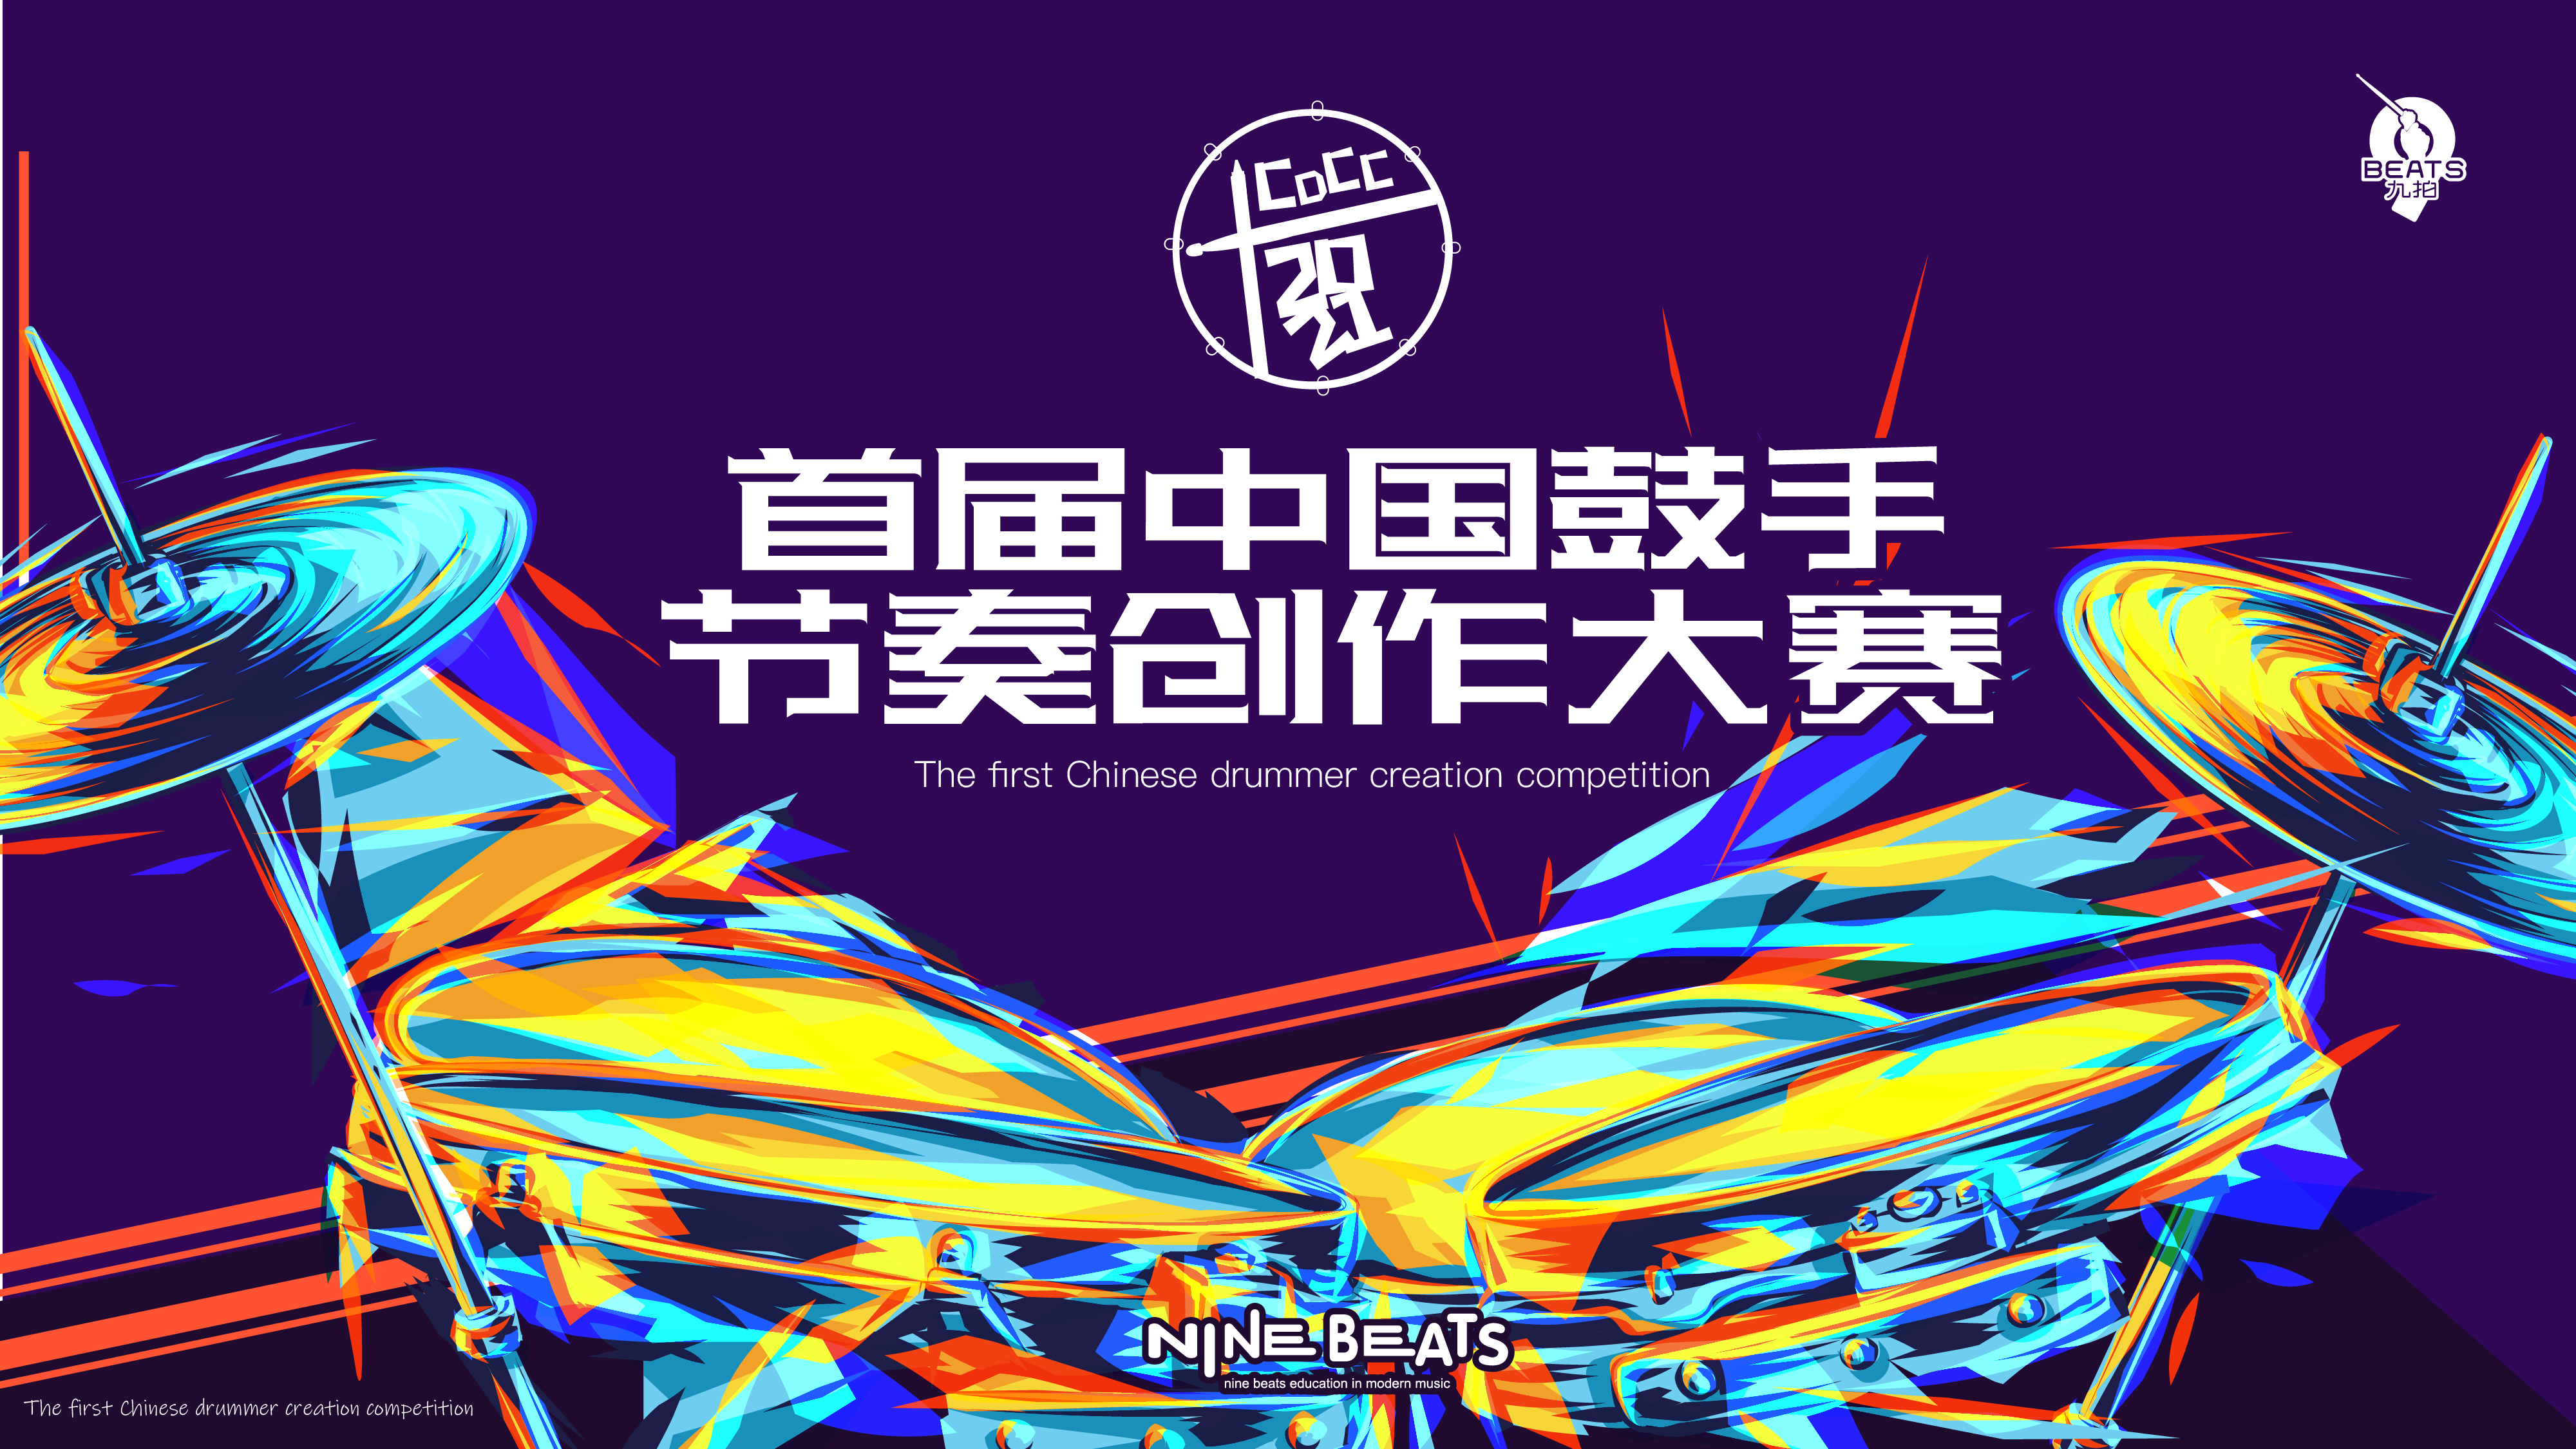 叮！您有一份邀請函待查收！2021 首屆中國鼓手節奏創作大賽來了~